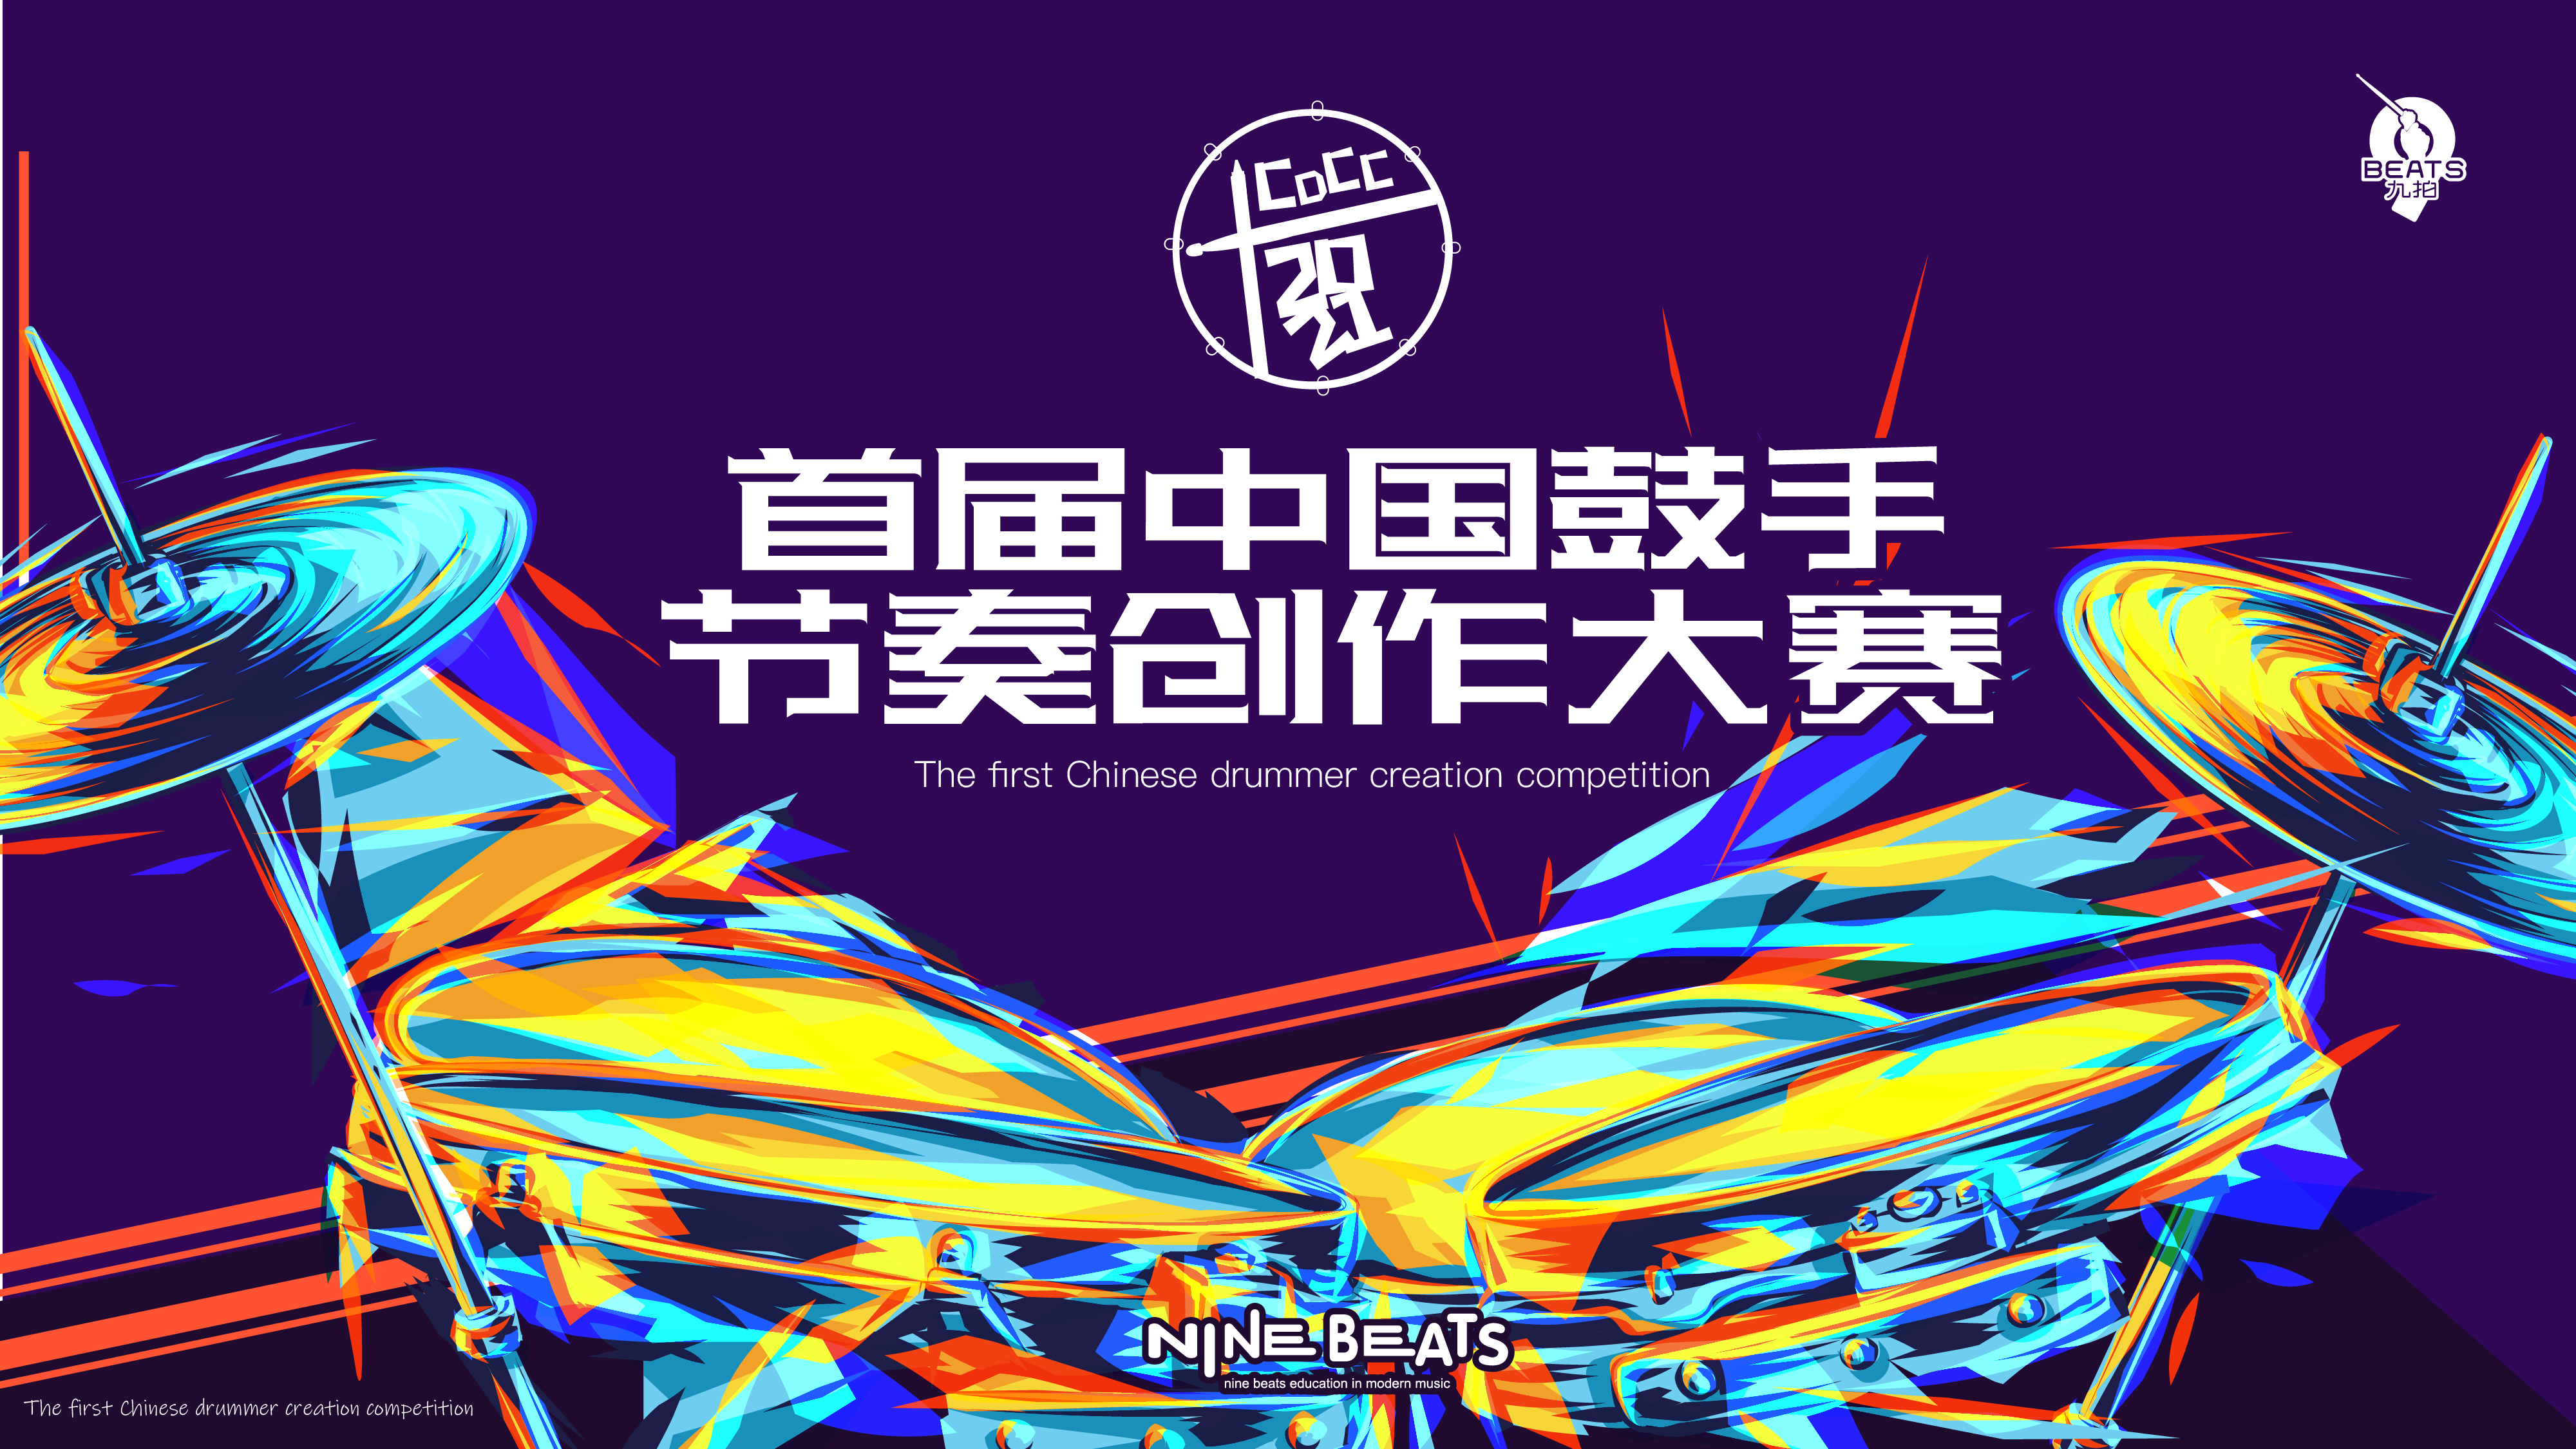 叮！您有一份邀請函待查收！2021 首屆中國鼓手節奏創作大賽來了~